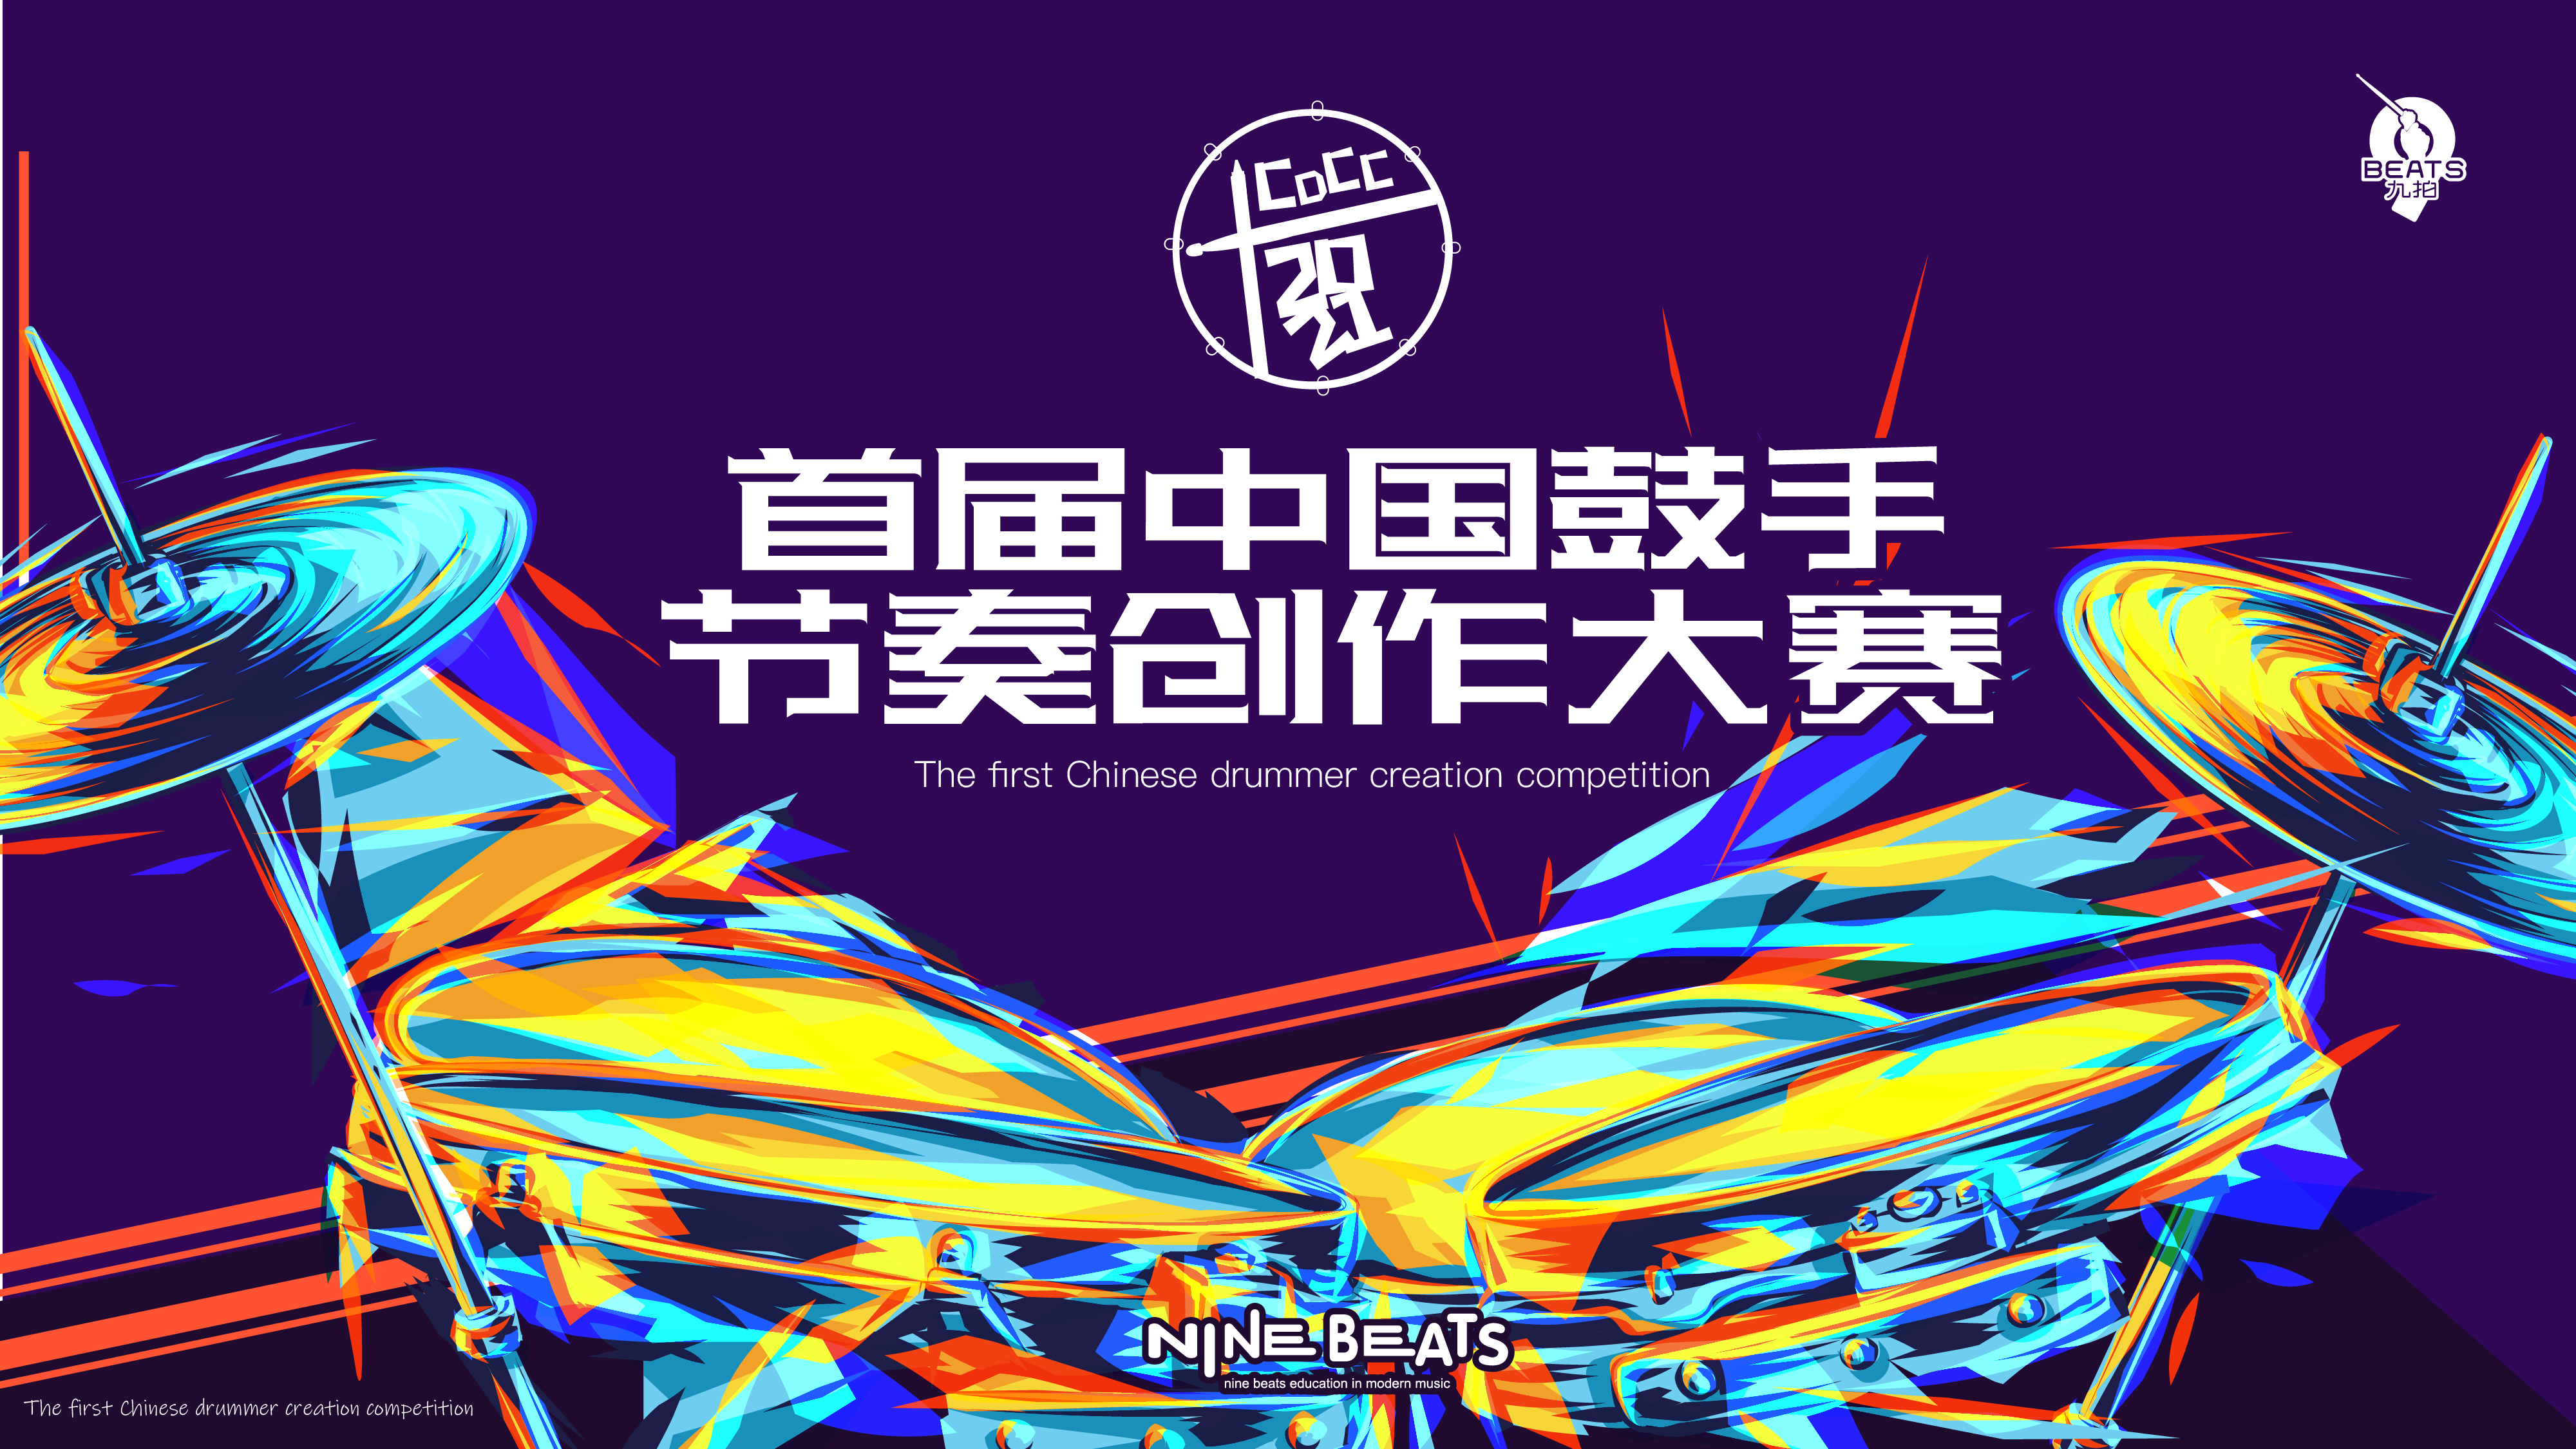 叮！您有一份邀請函待查收！2021 首屆中國鼓手節奏創作大賽來了~